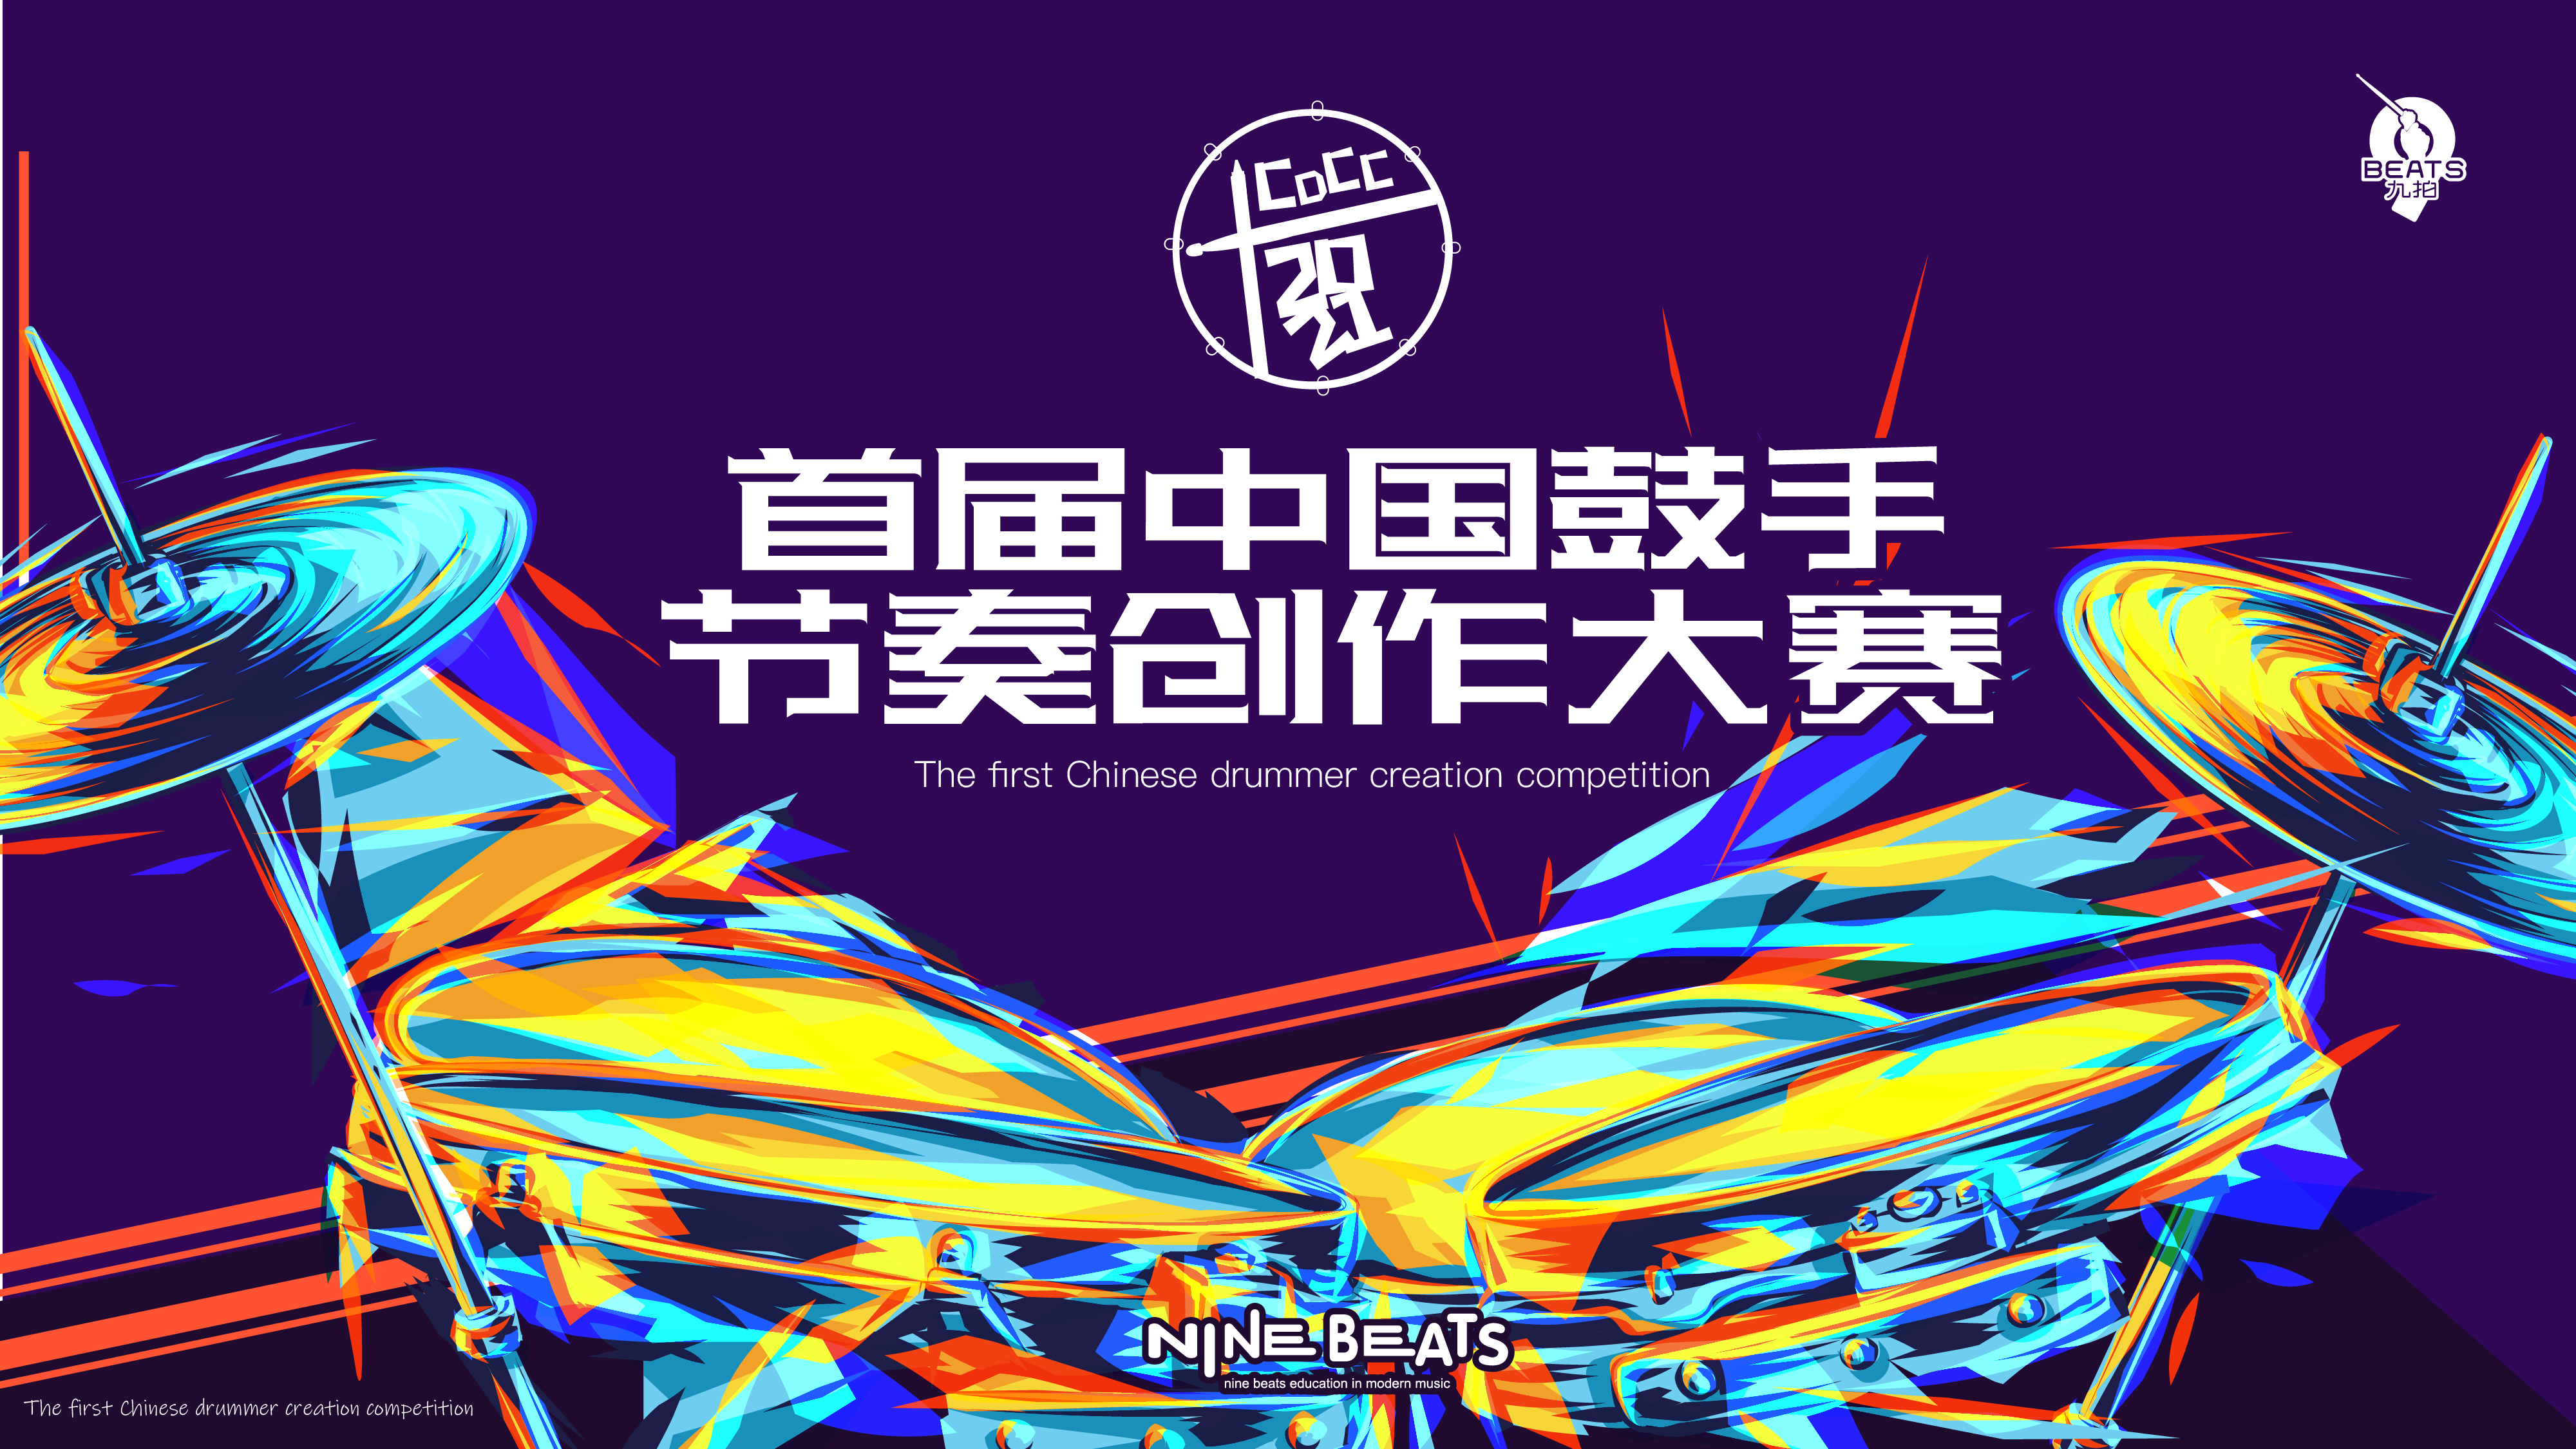 叮！您有一份邀請函待查收！2021 首屆中國鼓手節奏創作大賽來了~